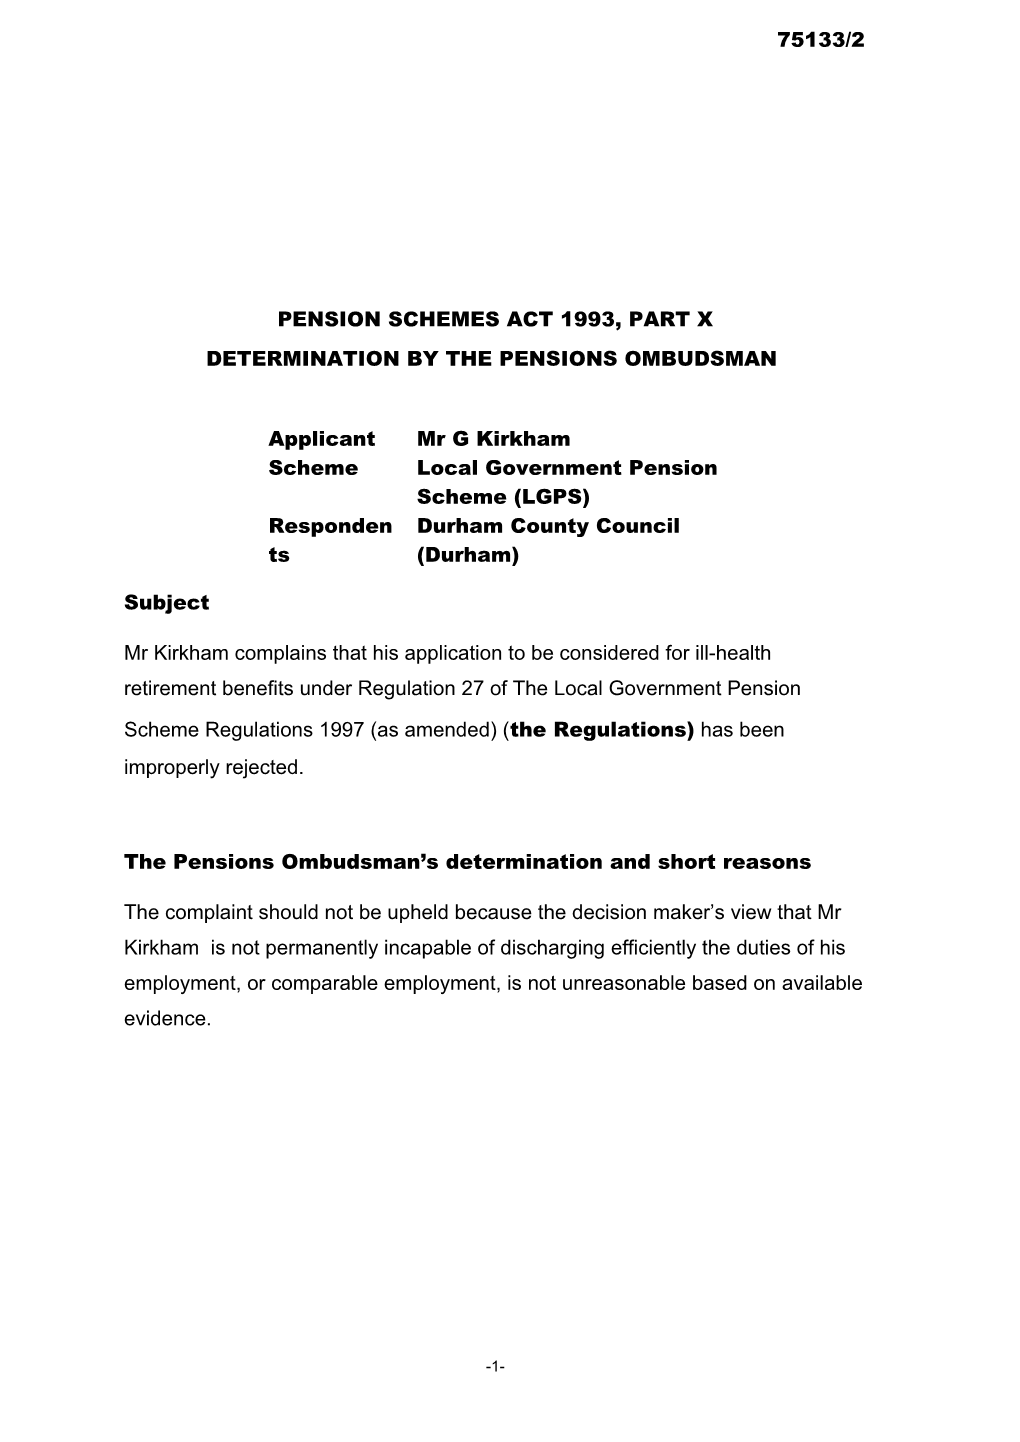 Pension Schemes Act 1993, Part X s71